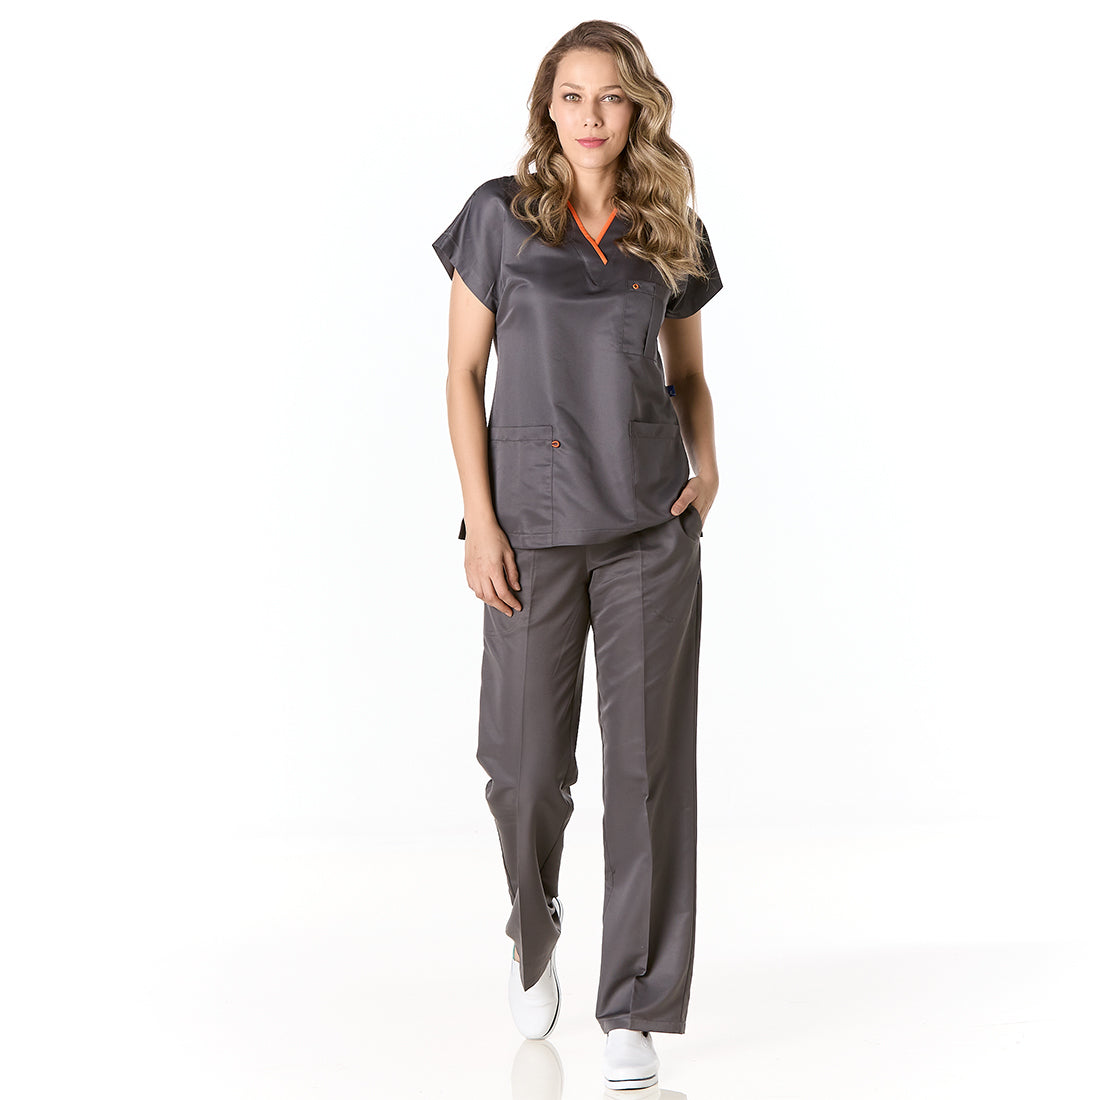 Mujer vistiendo pijama sanitario gris con escote en v y pantalon recto